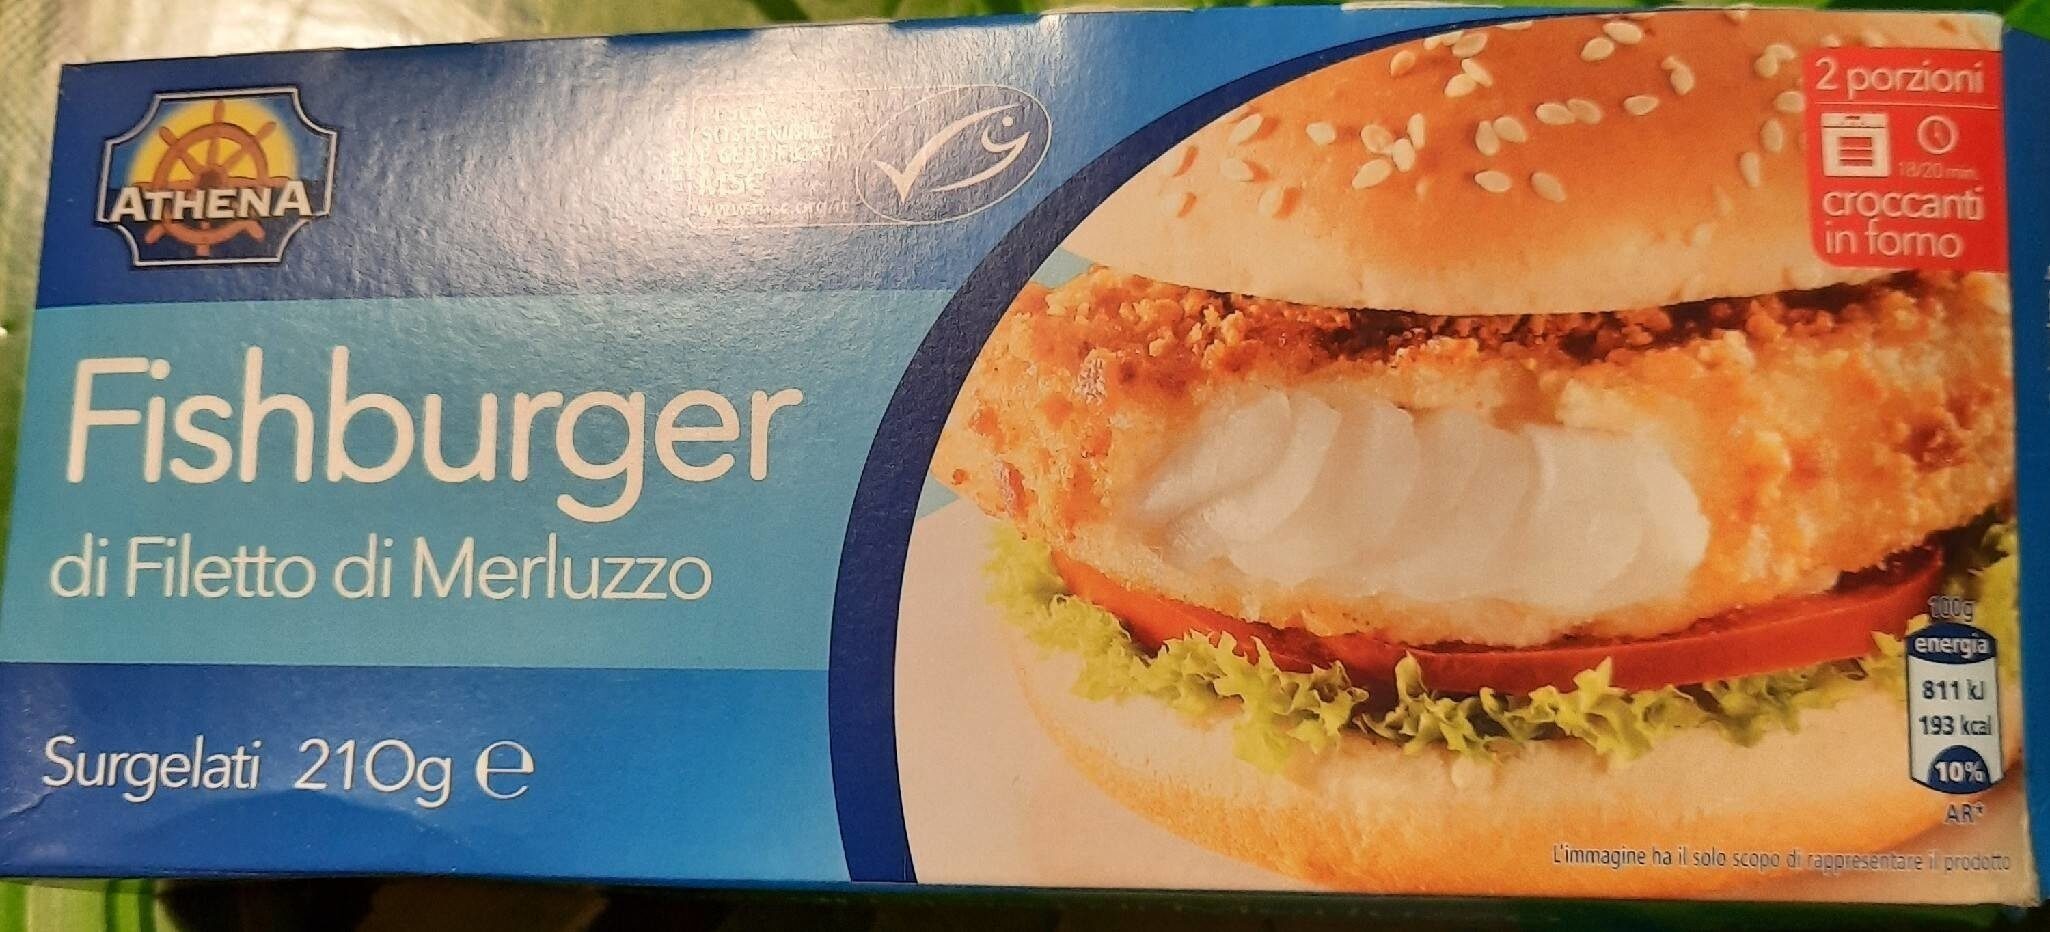 Fishburger di filetto di merluzzo - Prodotto